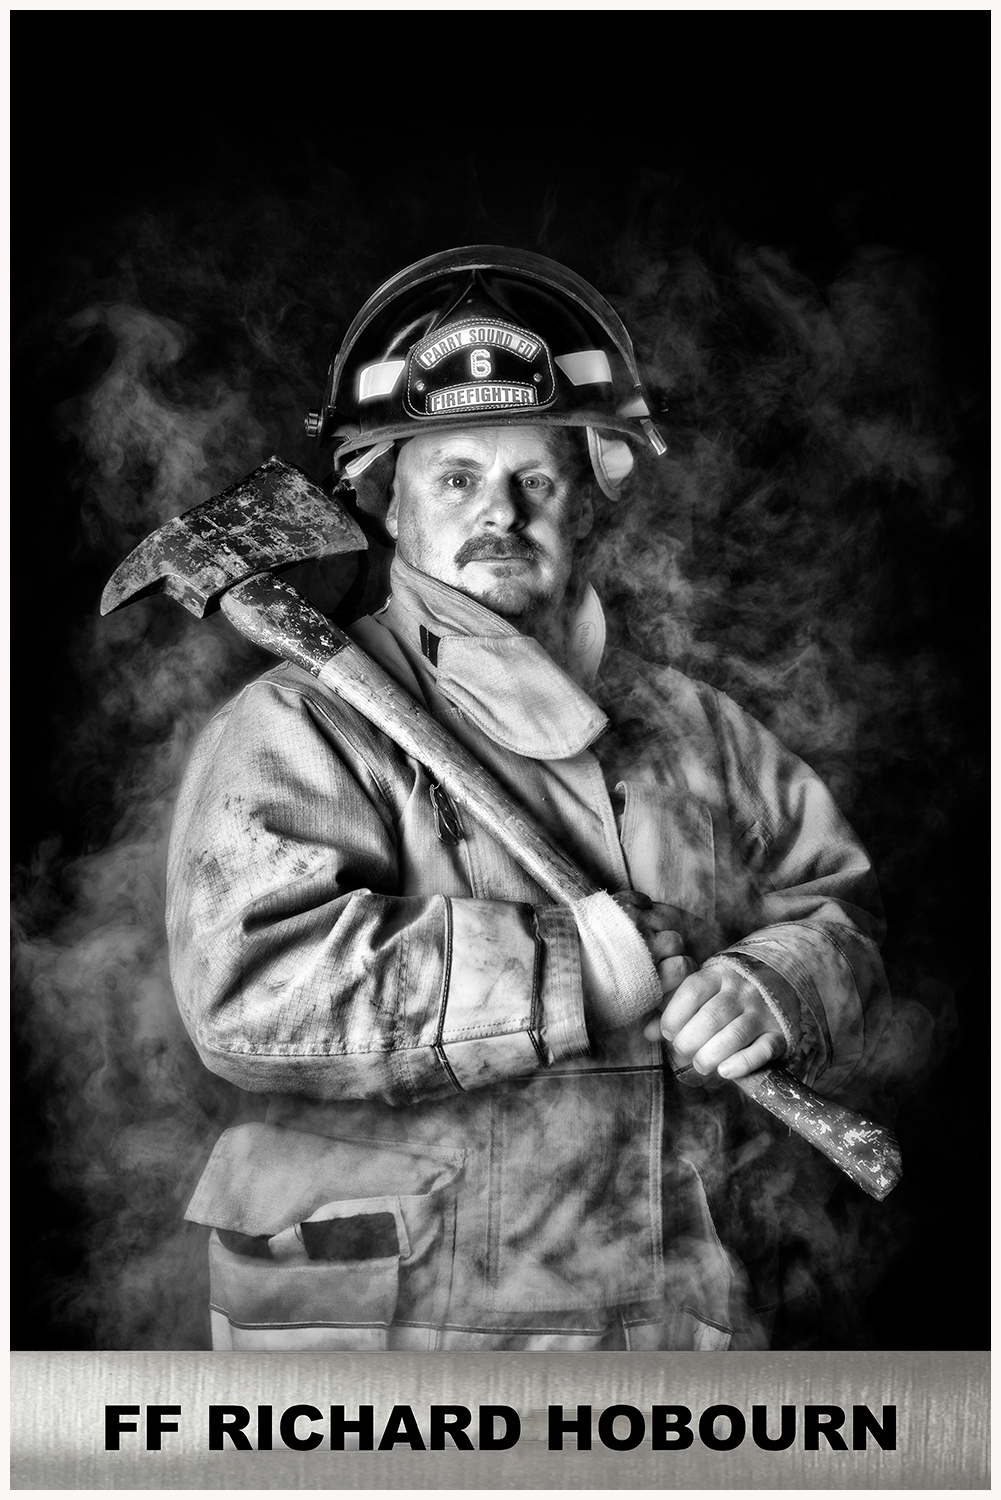 Firefighter Richard Hobourn